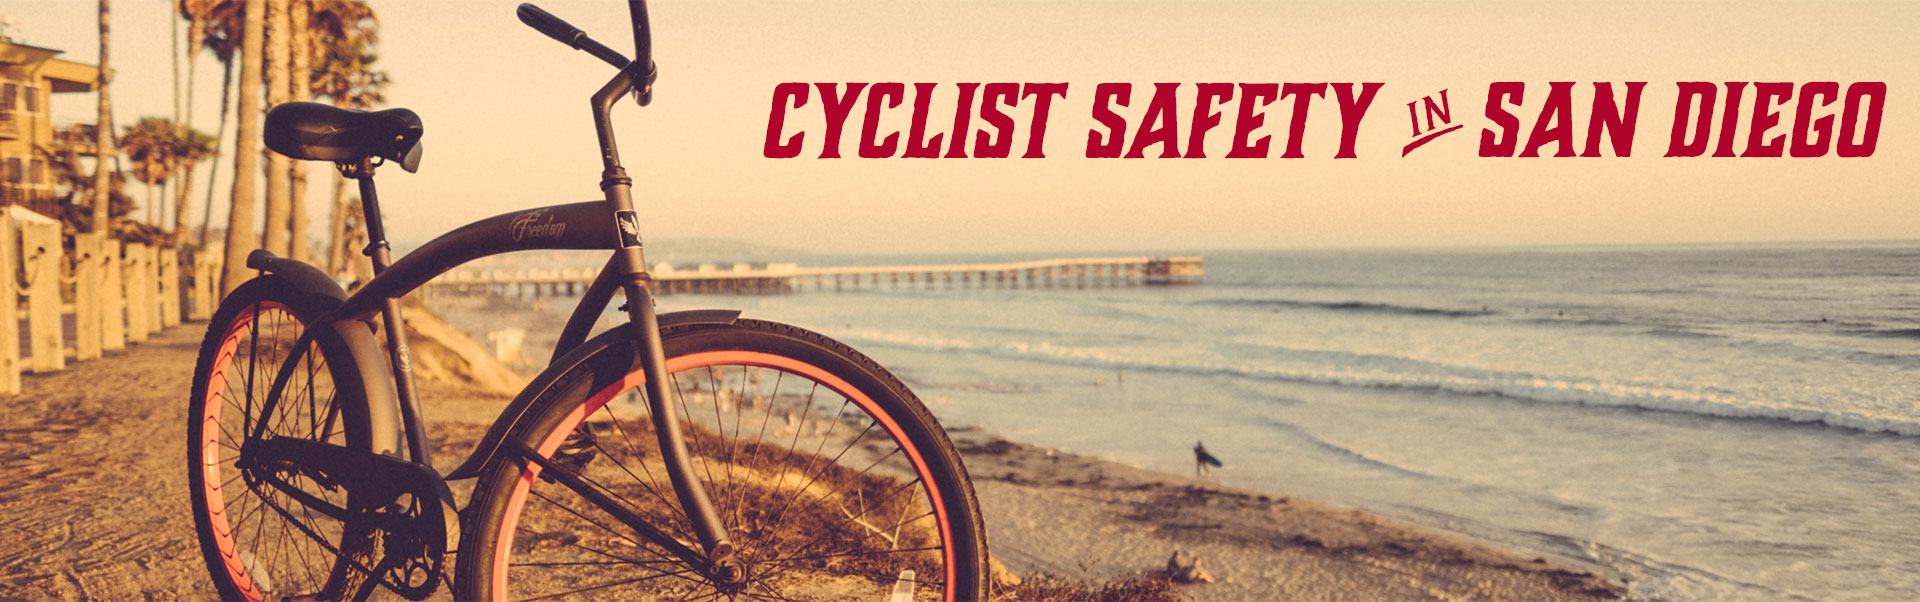 cyclist-safety-san-diego